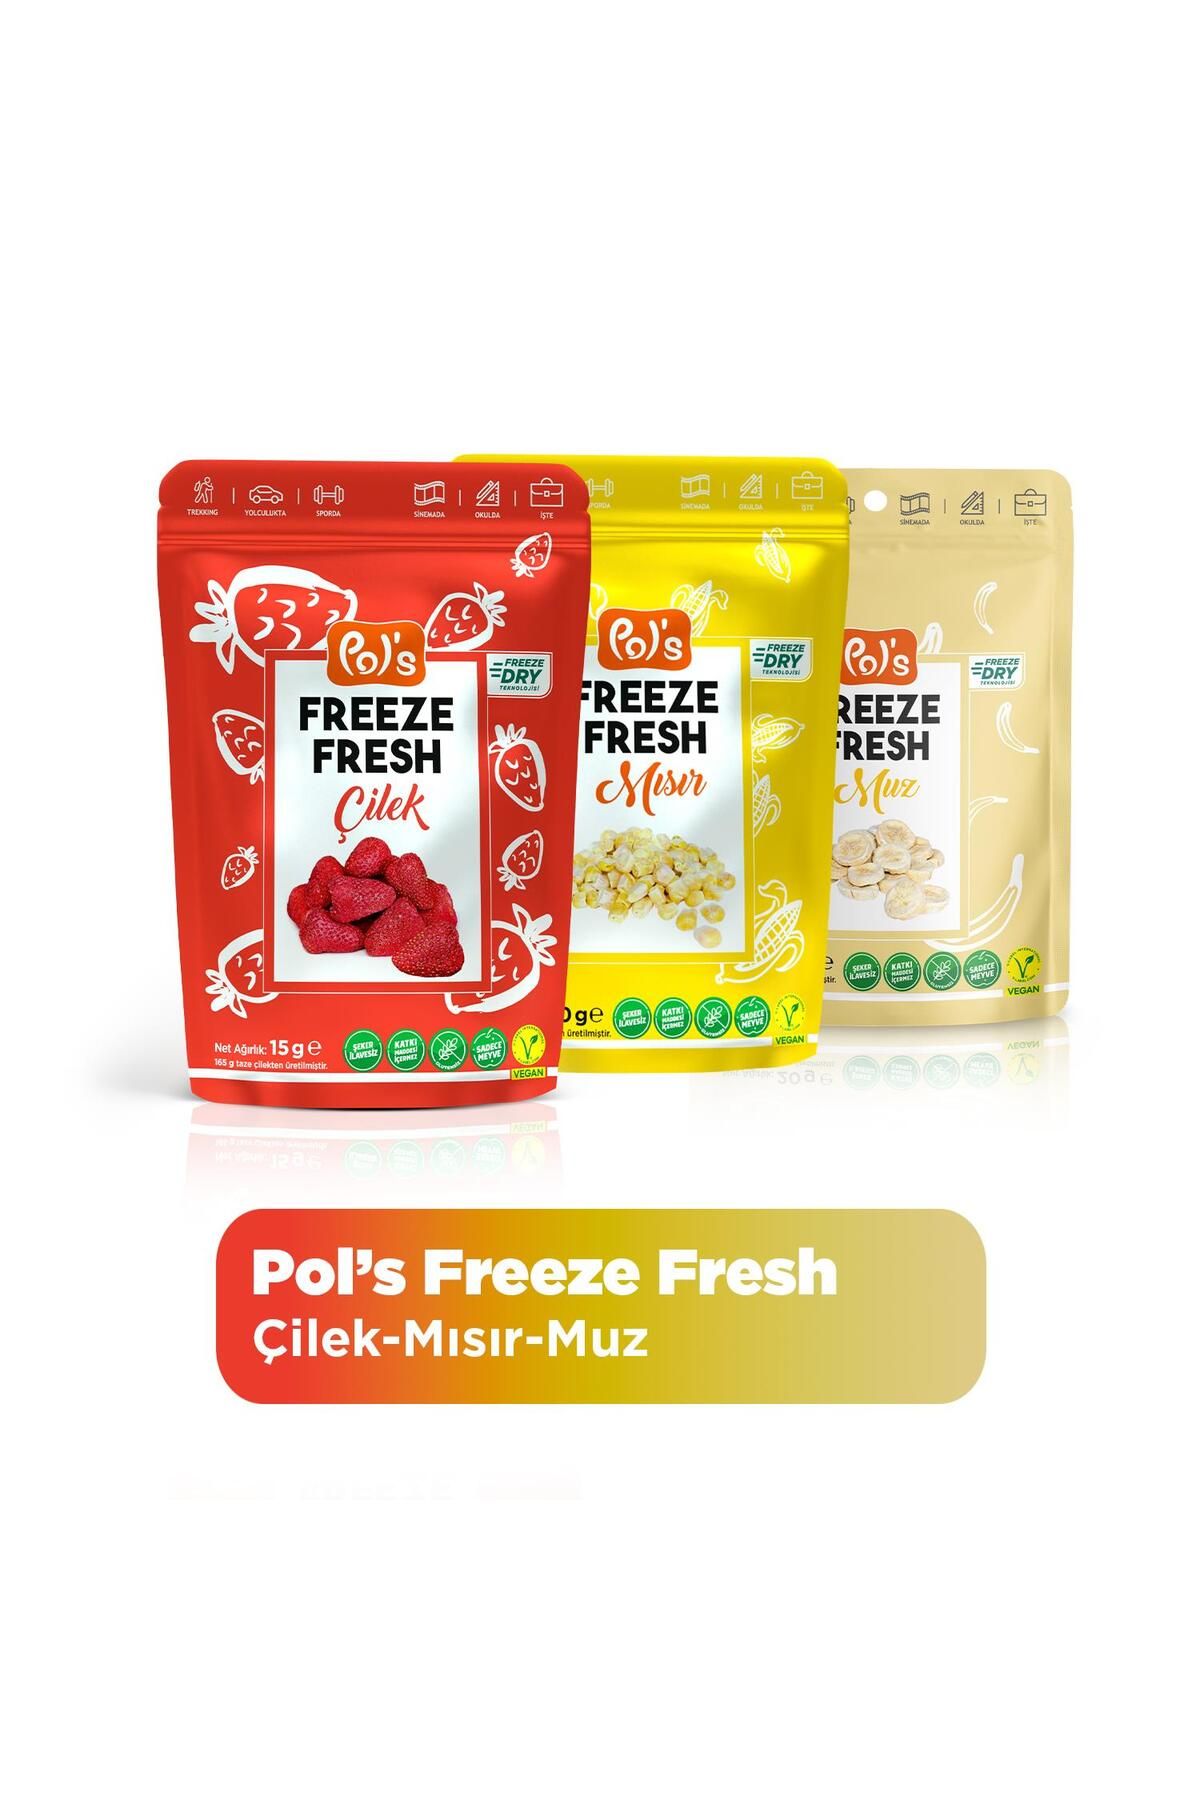 Pol's Pol’s Freeze Fresh Çilek 15 G X 1 Adet, Muz 20 G X 1 Adet ,mısır 25 G X 1 Adet Freeze Dry Dondurular